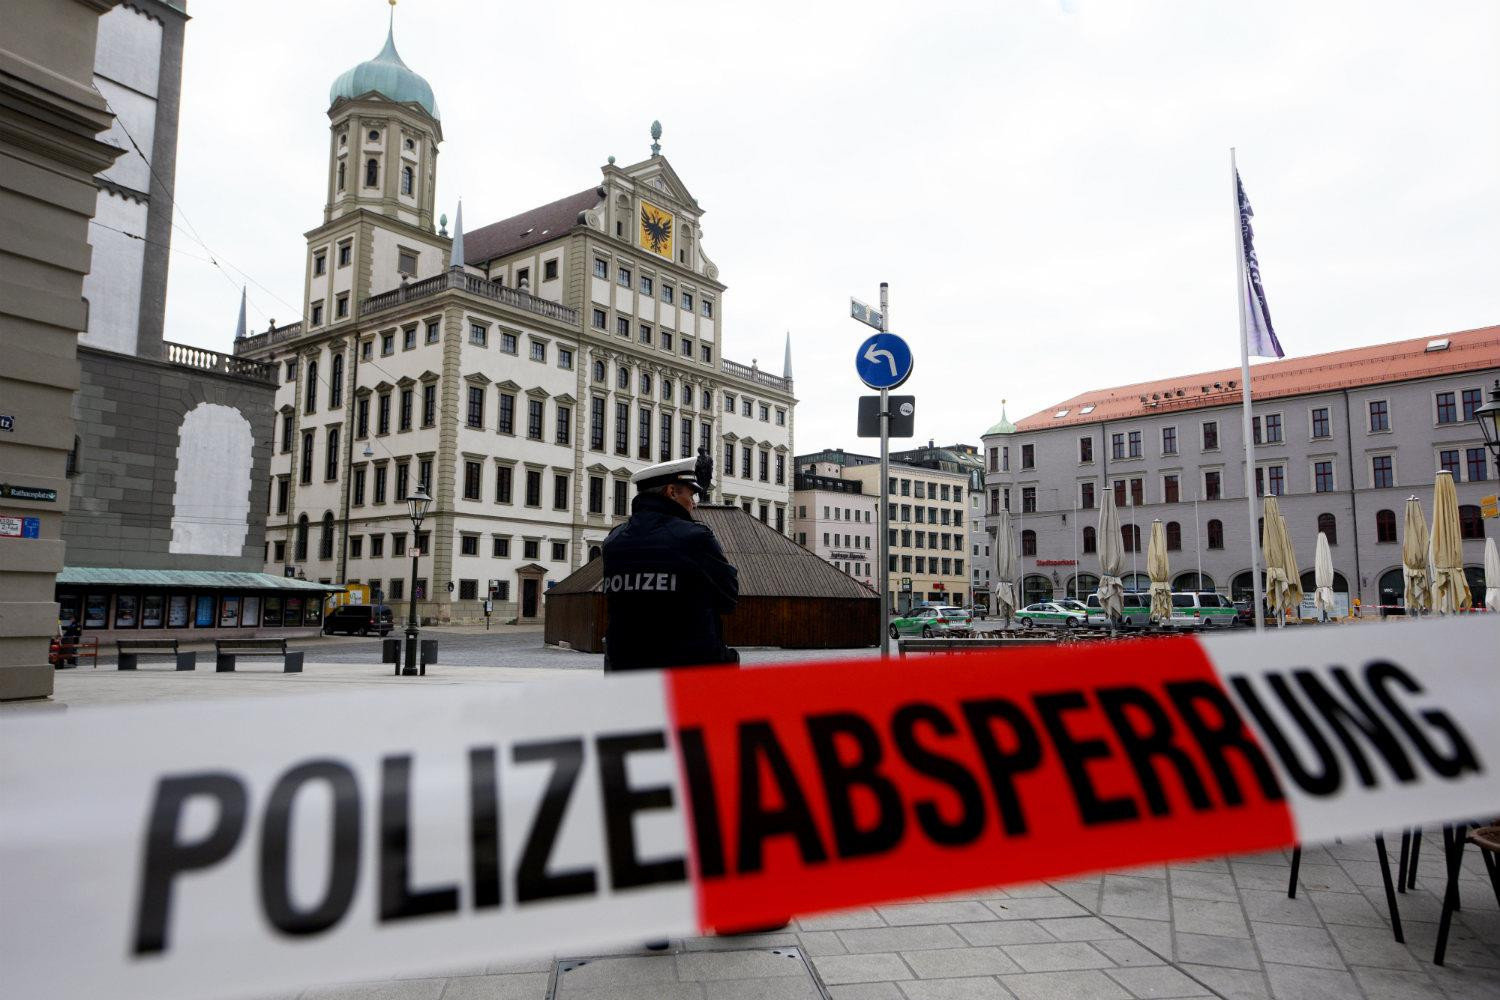 Cảnh sát đã chặn quảng trường tòa thị chính ở Augsburg sau một vụ đánh bom. Ảnh: thelocal.de